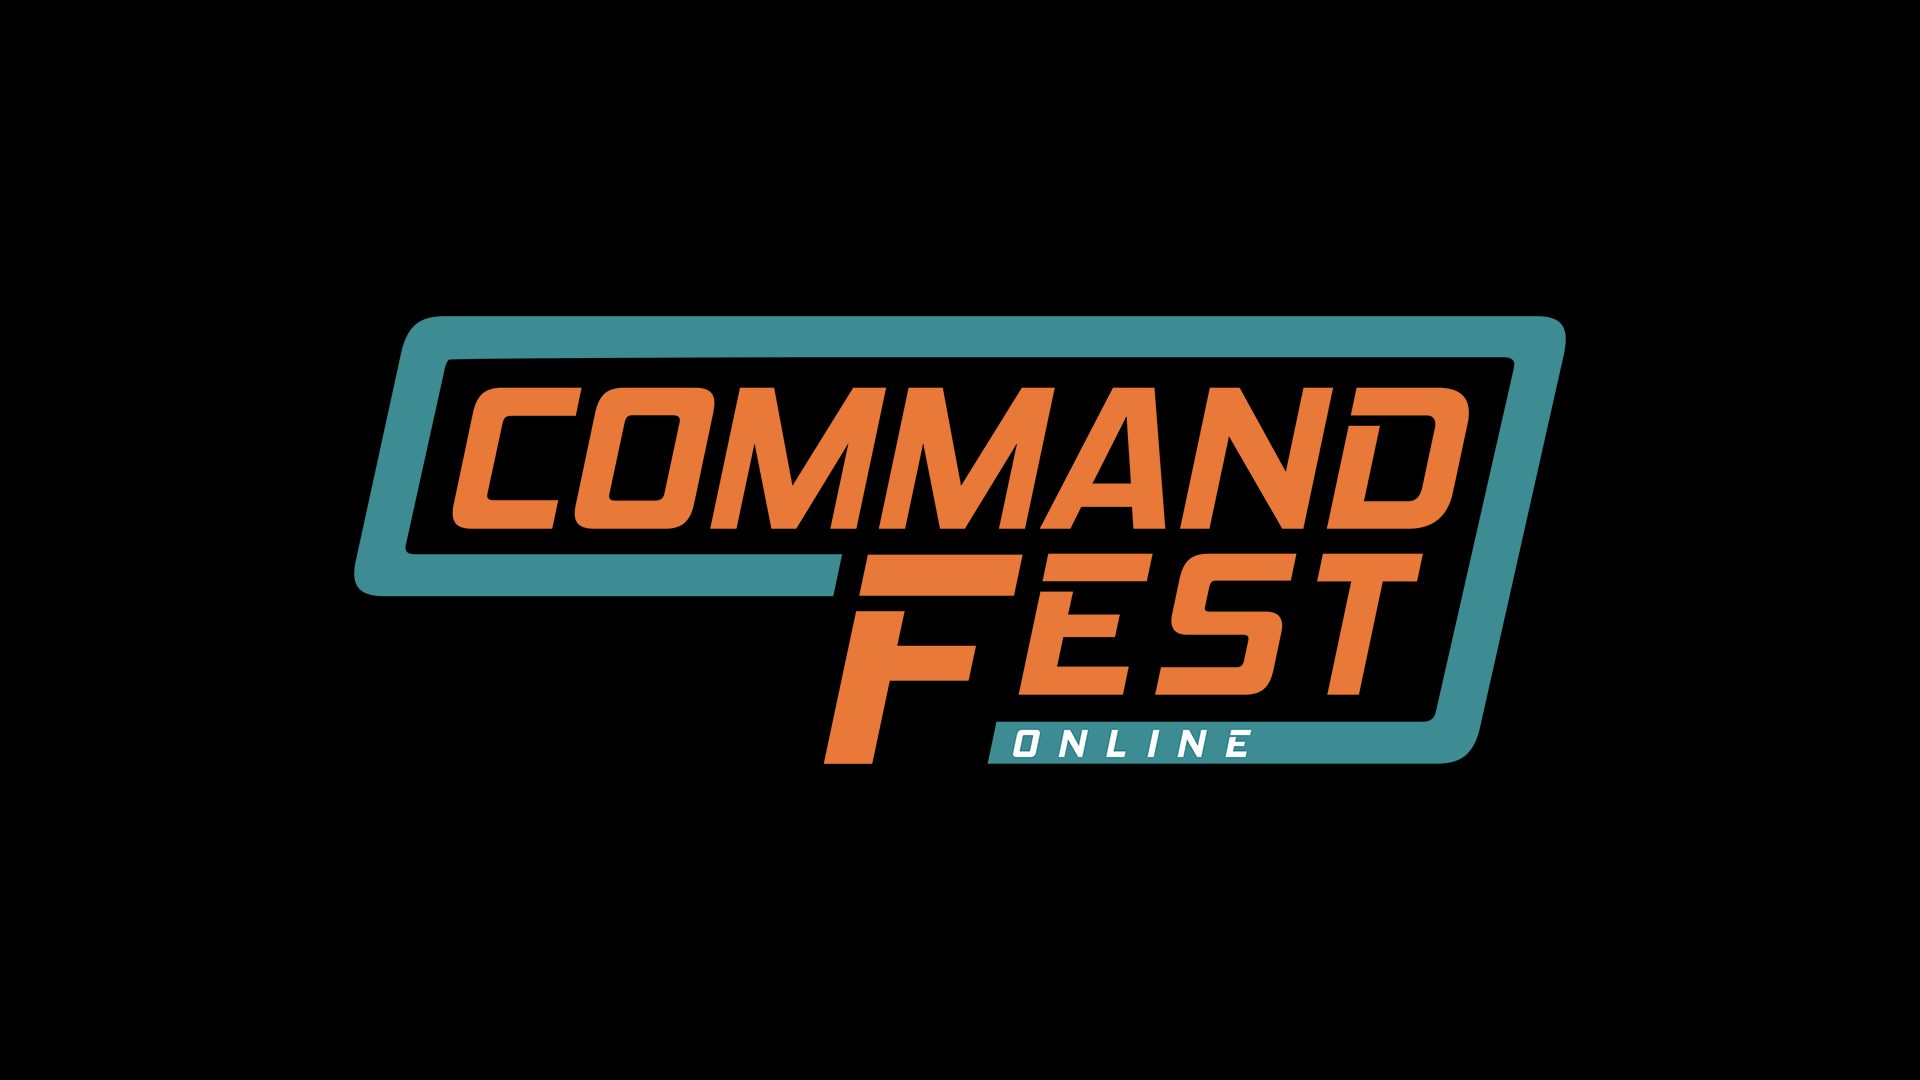 CommandFest Online Arrives June 6